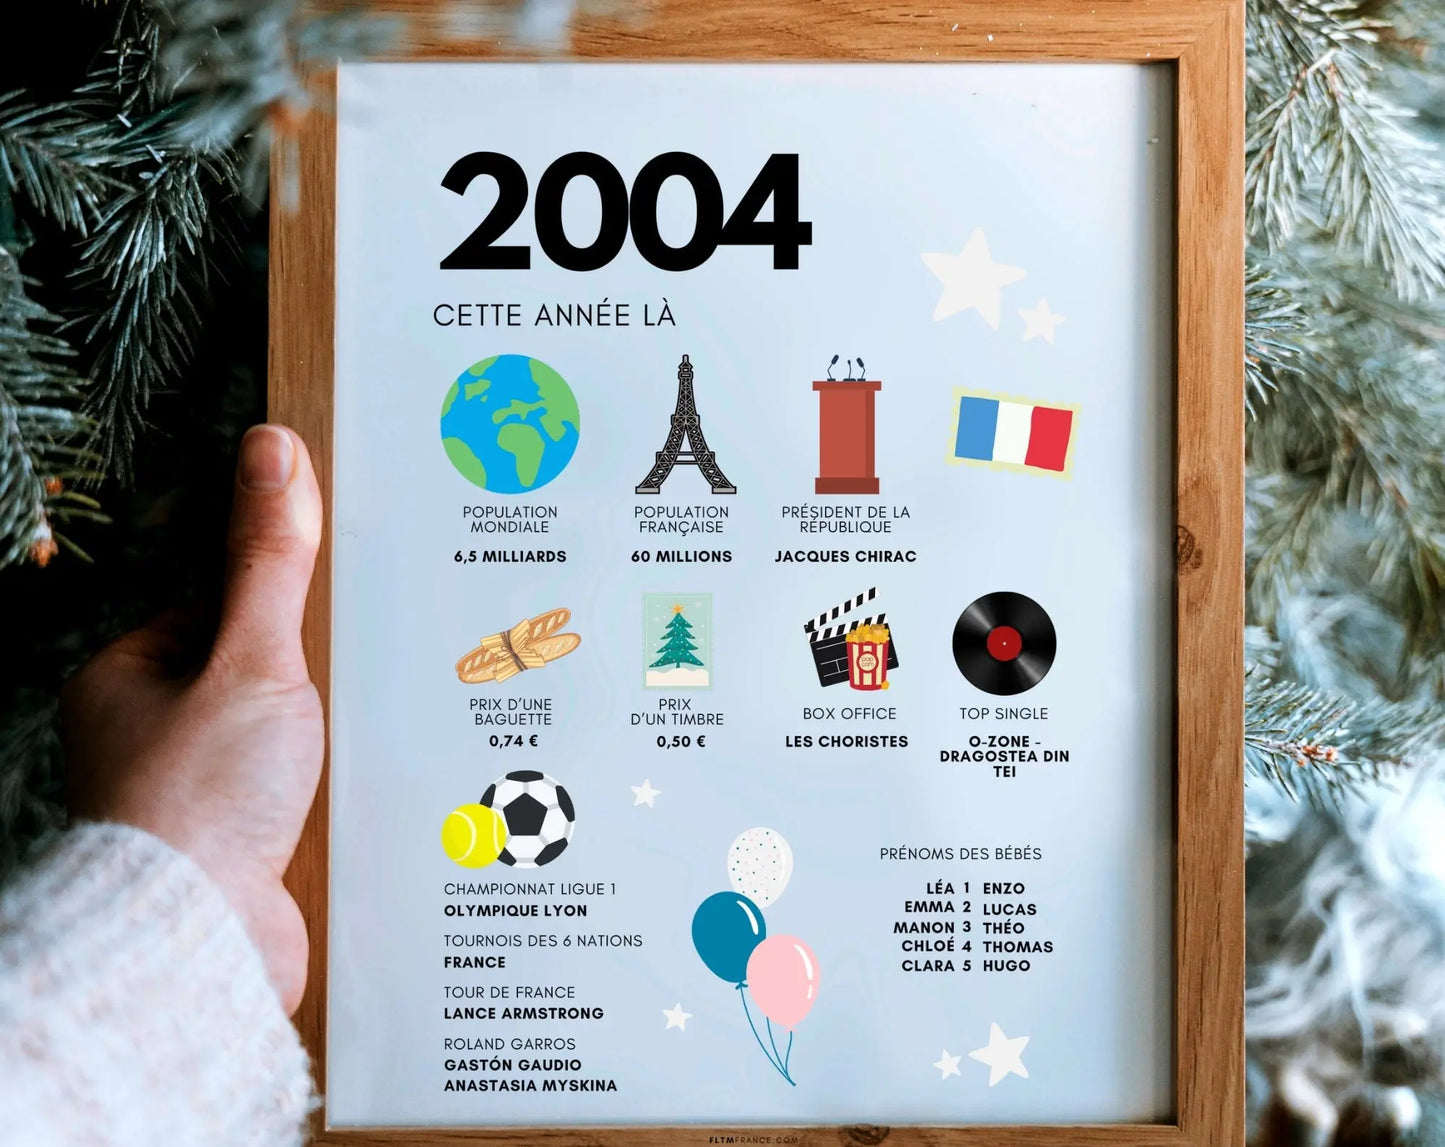 2004 Affiche anniversaire 20 ans - Que s'est-il passé en 2004 ? - FLTMfrance